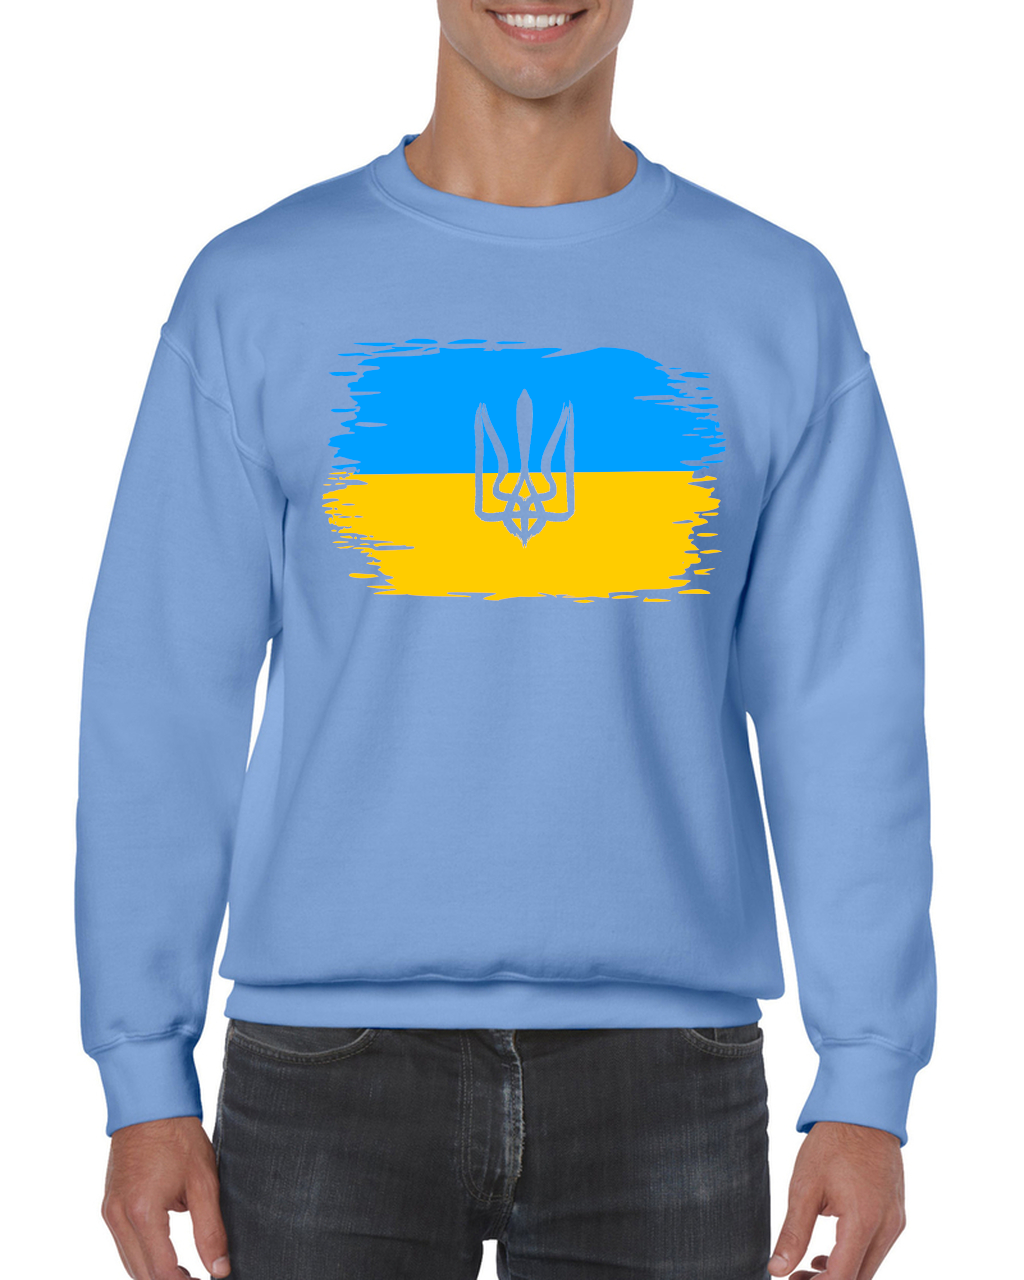 Adult unisex sweatshirt "Ukrainian Flag"